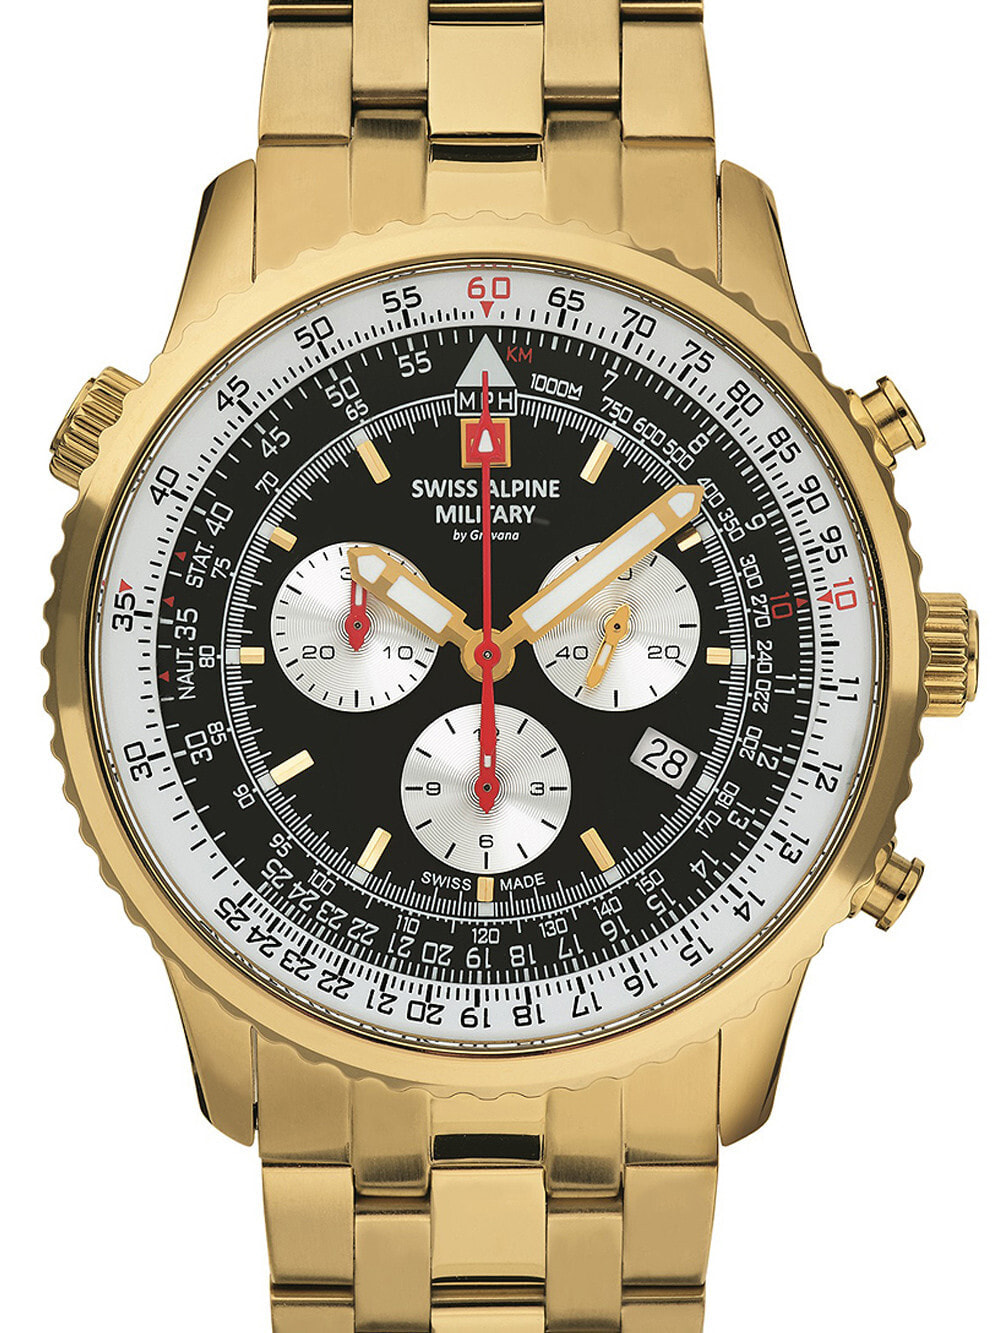 Мужские наручные часы с золотистым браслетом Swiss Alpine Military 7078.9117 chrono mens 45mm 10ATM